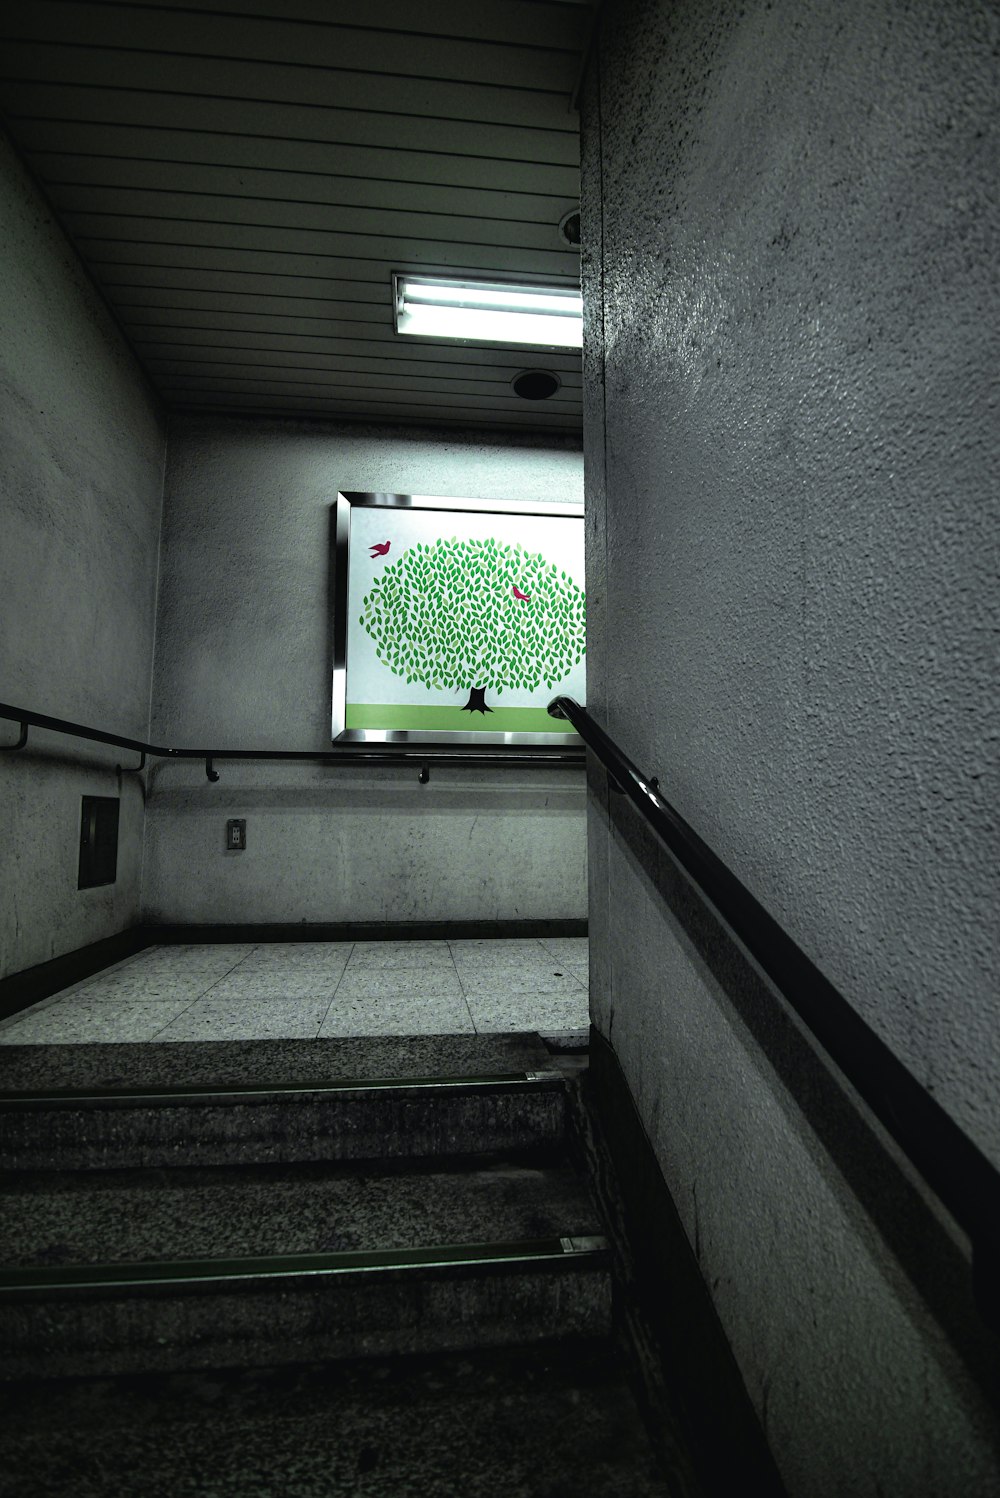 una imagen de un árbol en una pantalla en una escalera